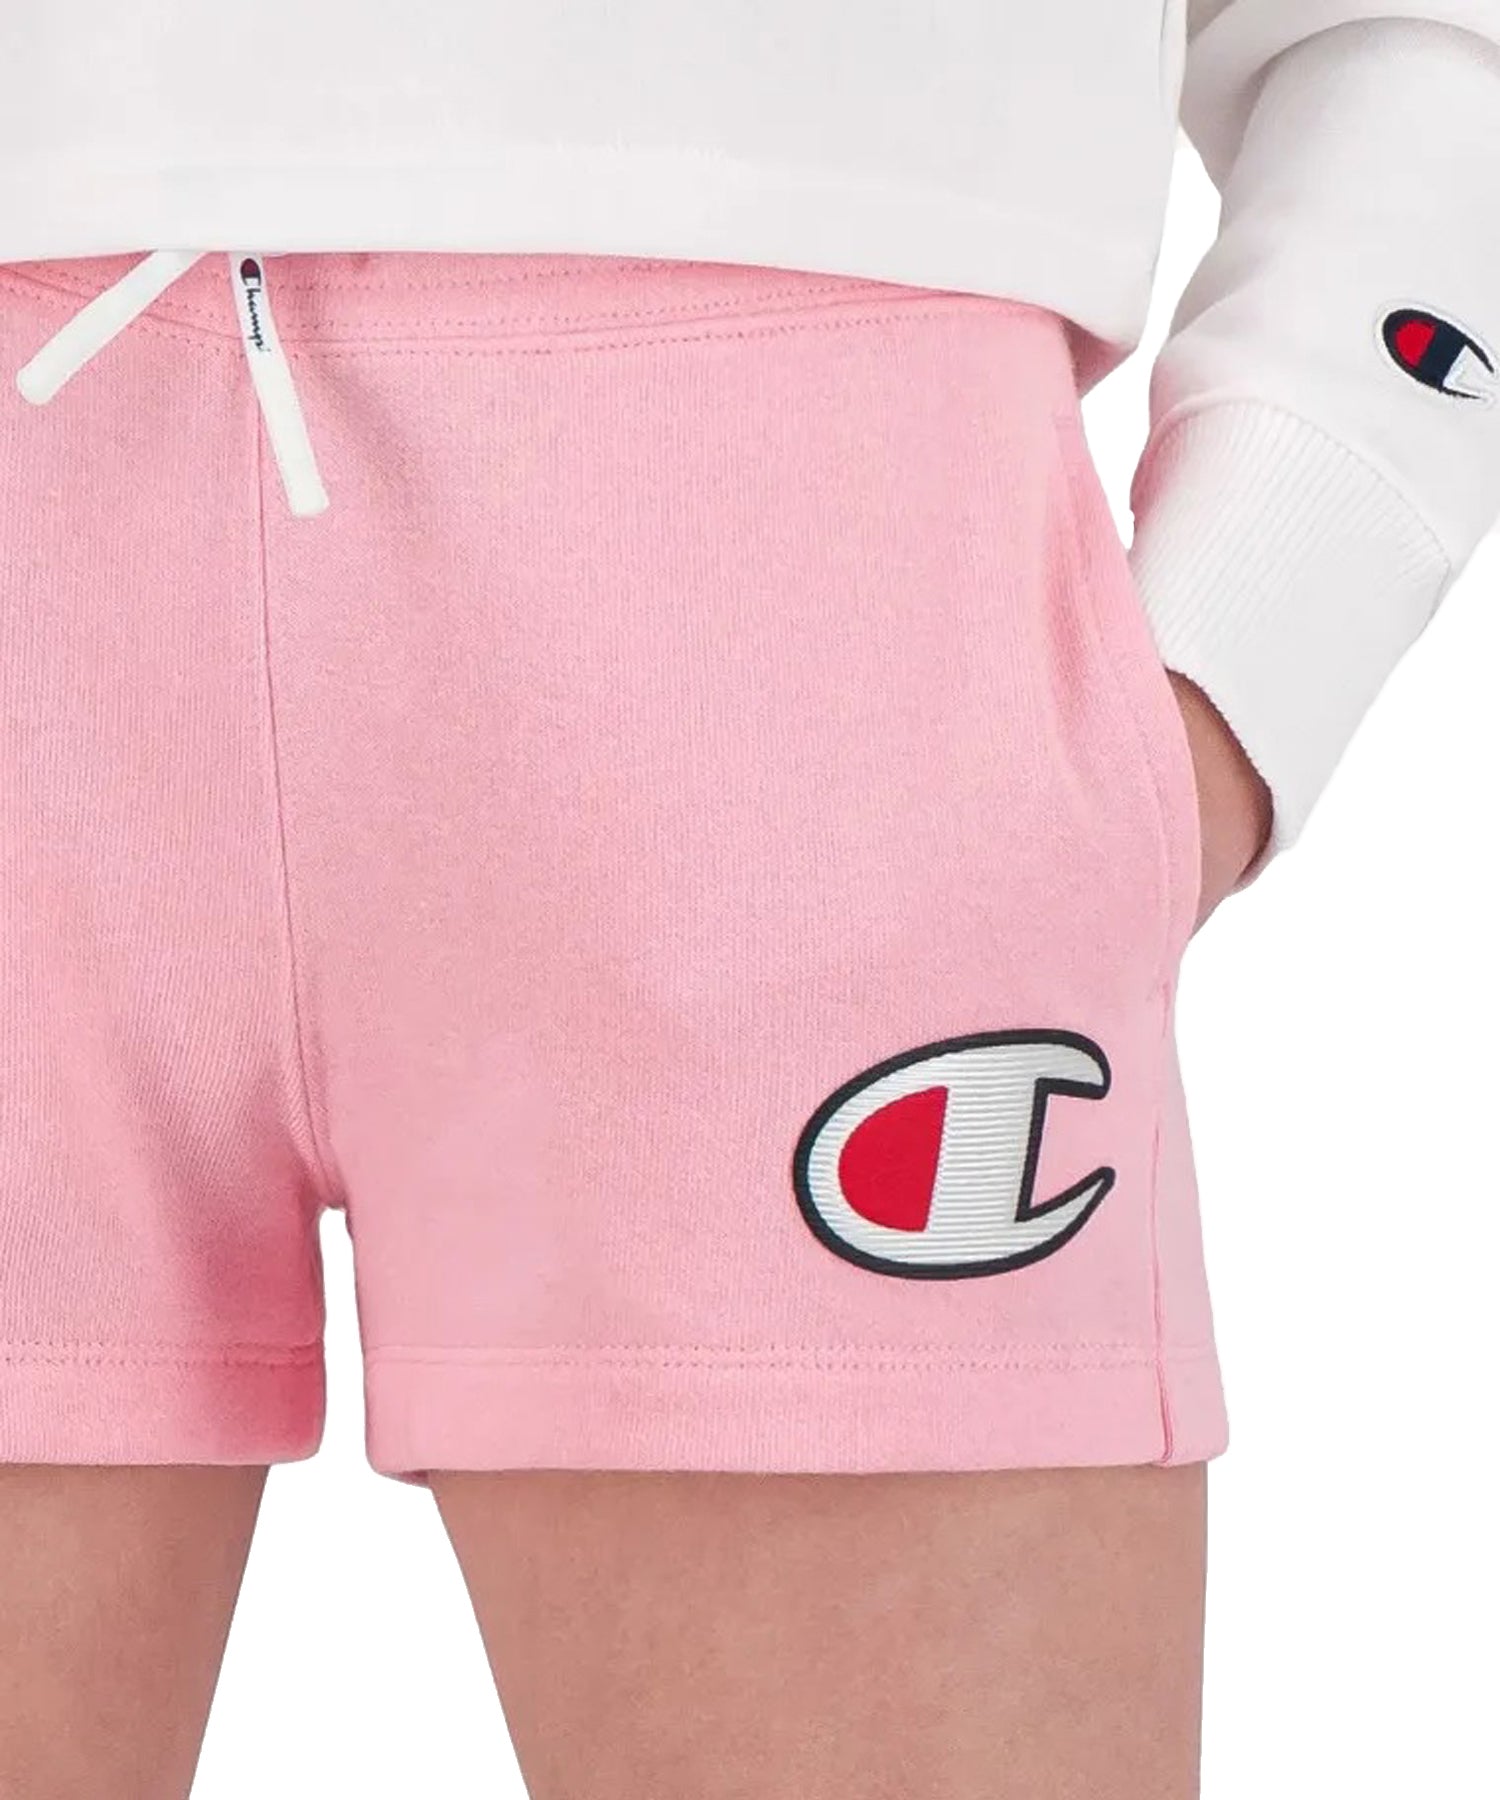 Shorts Champion color rosa para niña con logo Champion en la parte del muslo-tela de felpa de algodón para mayor comodidad.